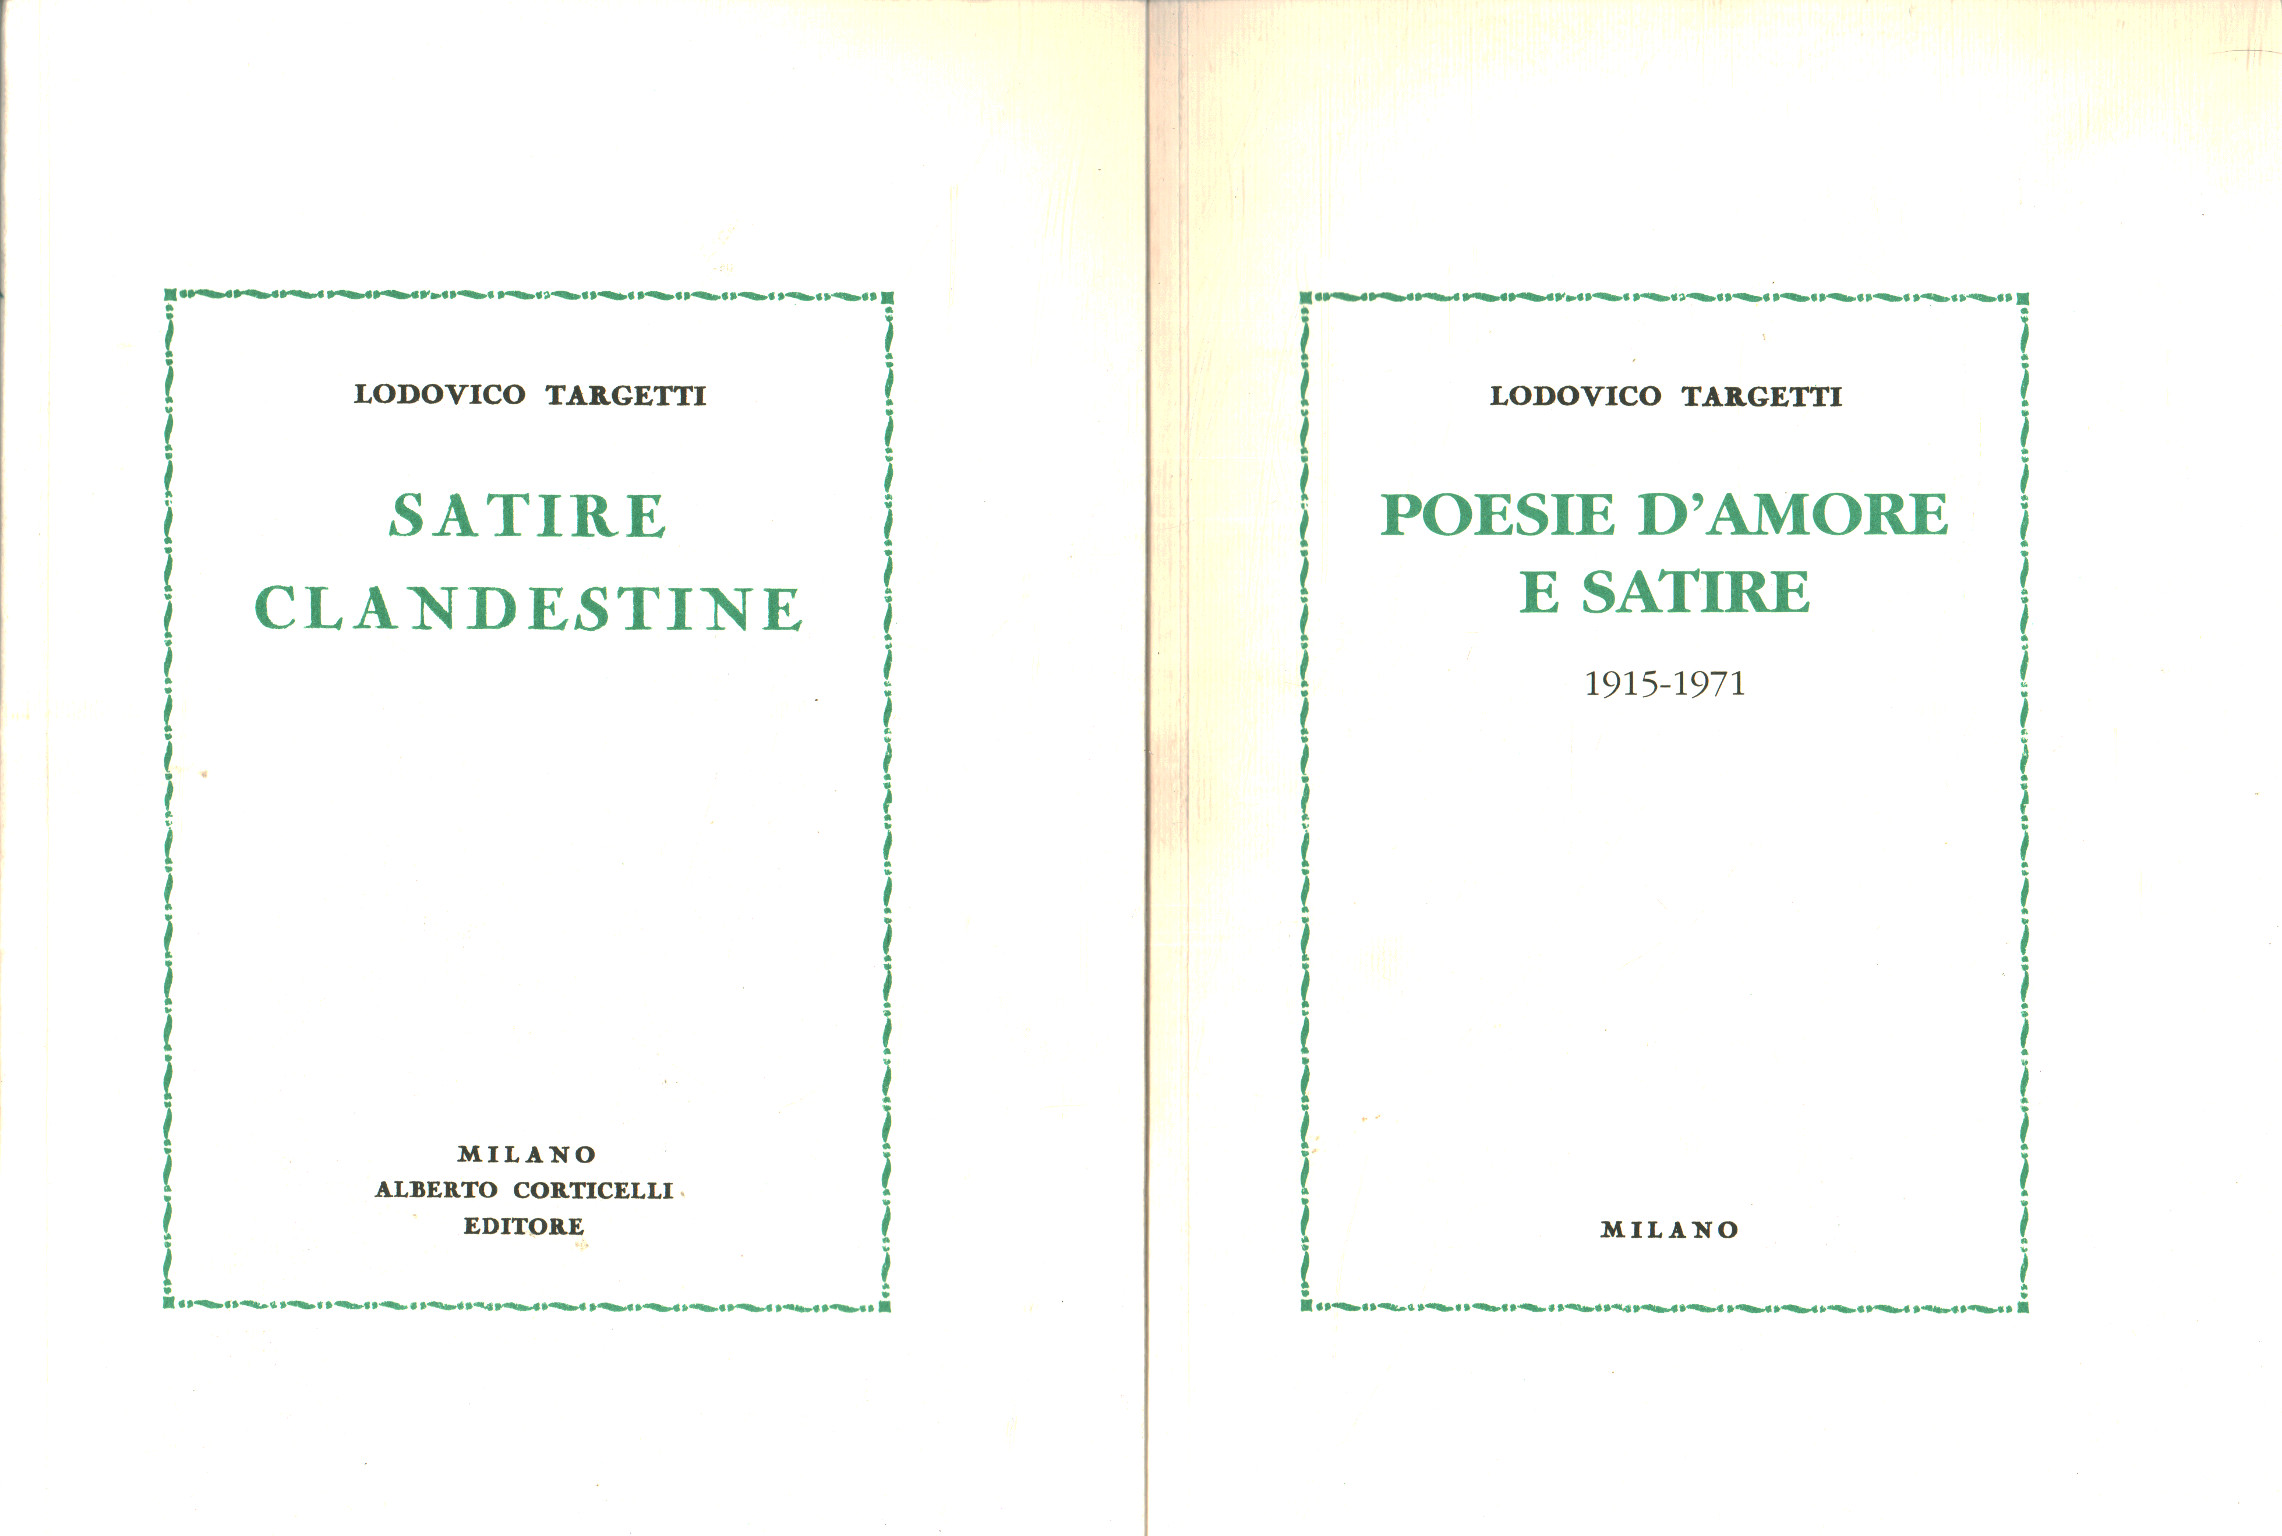 Satire clandestine. Poesie d amore e satire 1915-1, Lodovico Targetti